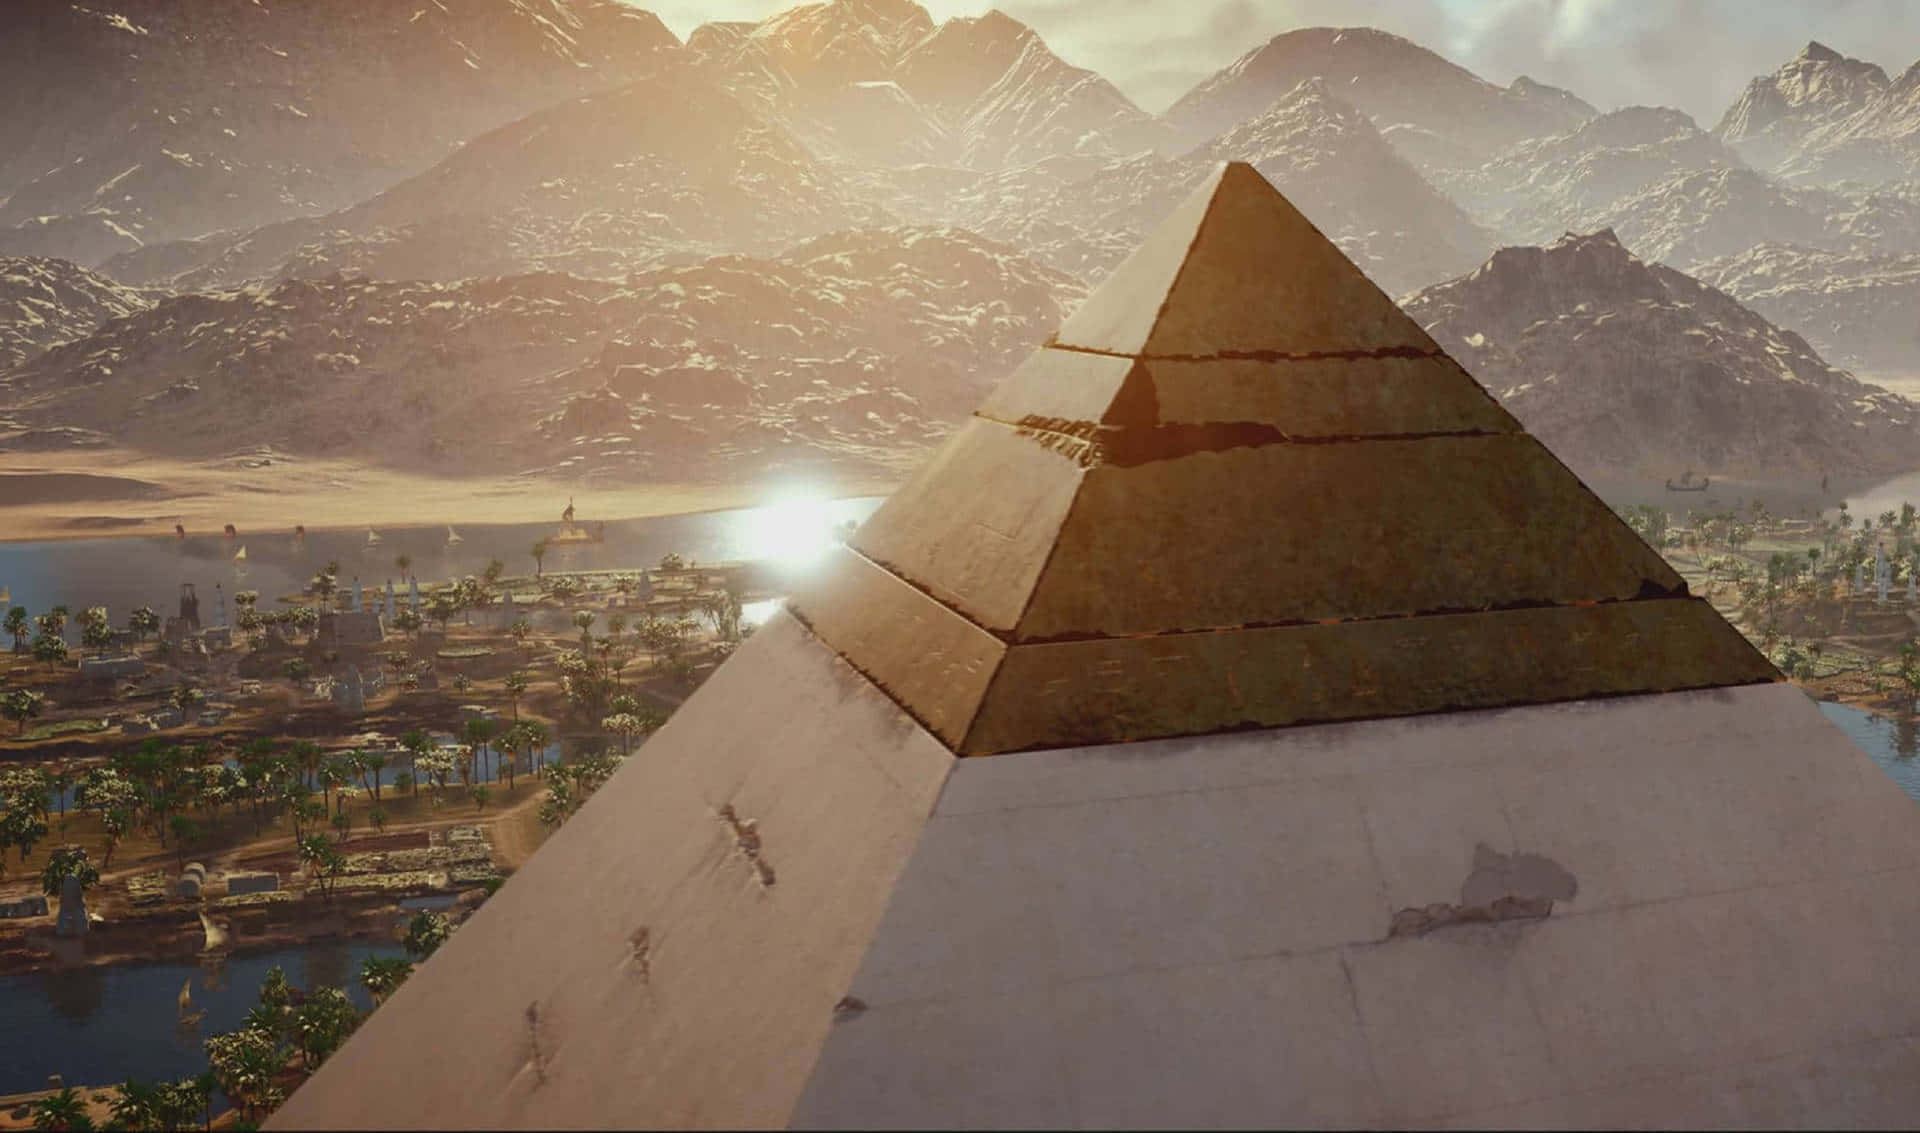 2440x1440bakgrundsbild För Assassin's Creed Odyssey Av Den Stora Pyramiden.